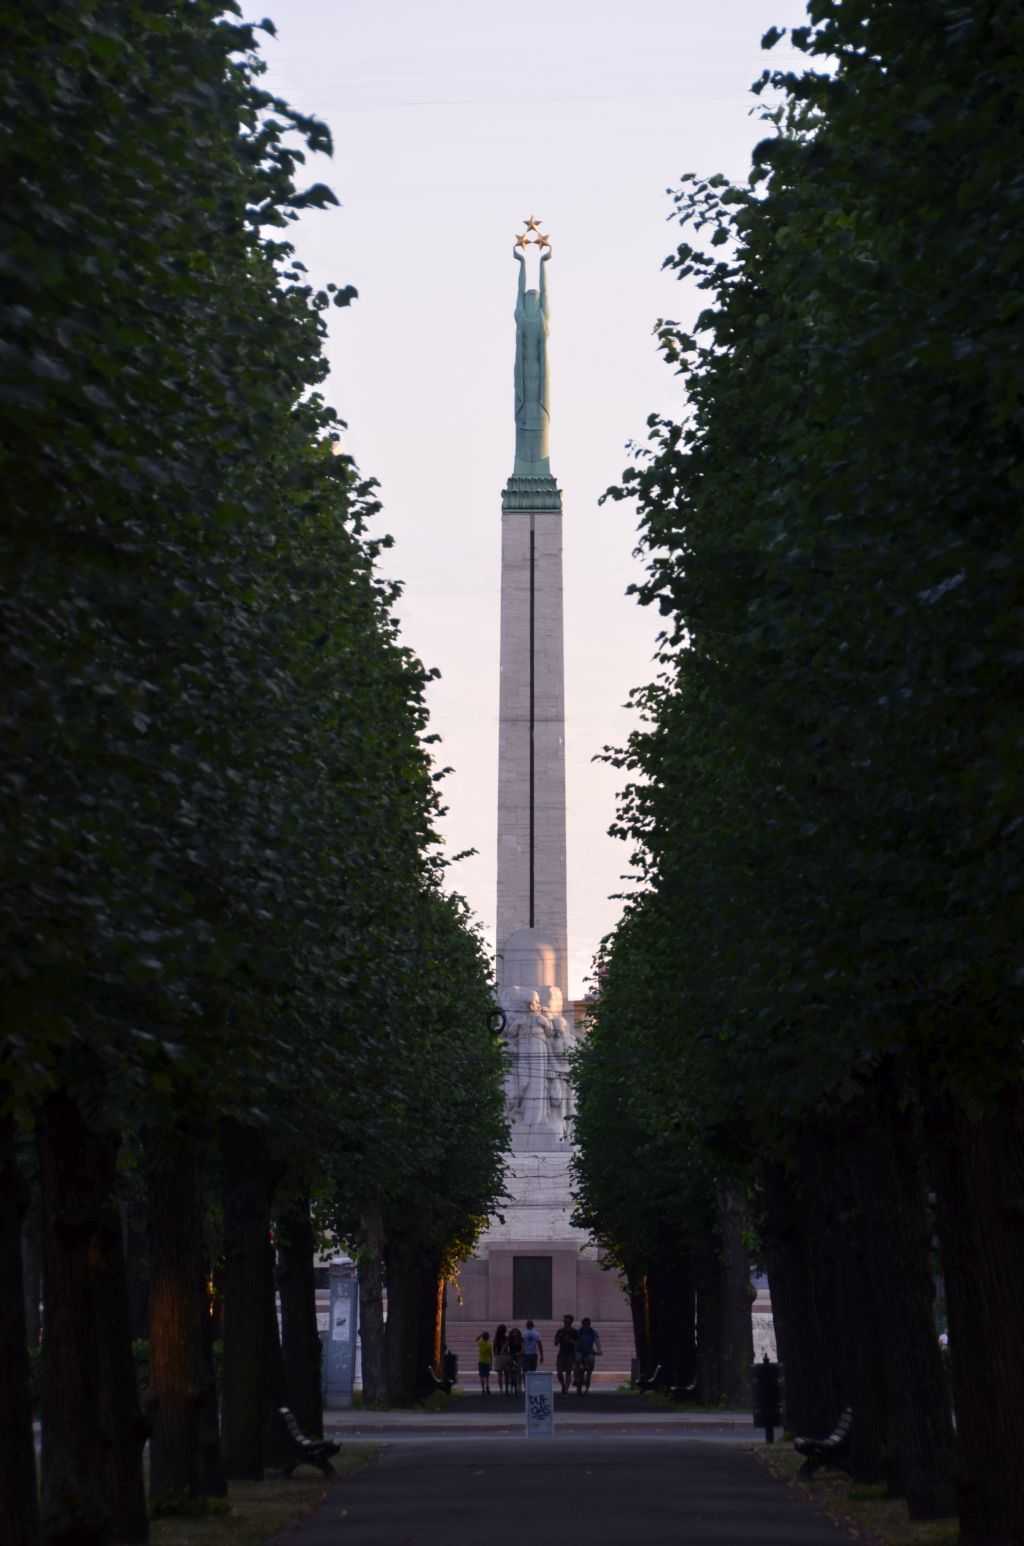 Letonyalı heykeltıraş Kārlis Zāle tarafından tasarlanan özgürlük anıtı…